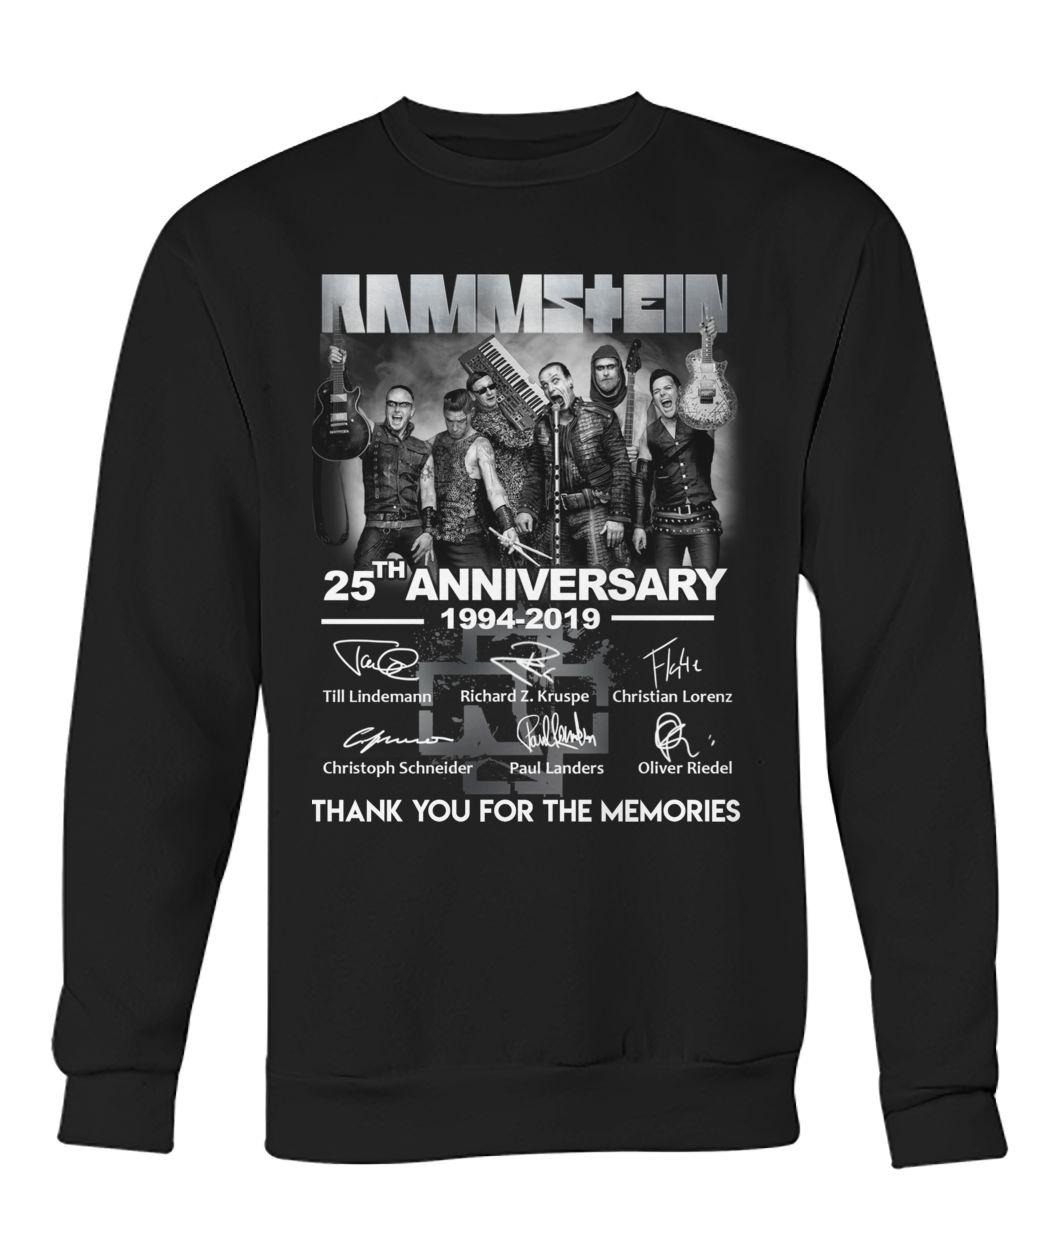 Rammstein 25th anniversary 1994 2019 sweatshirt